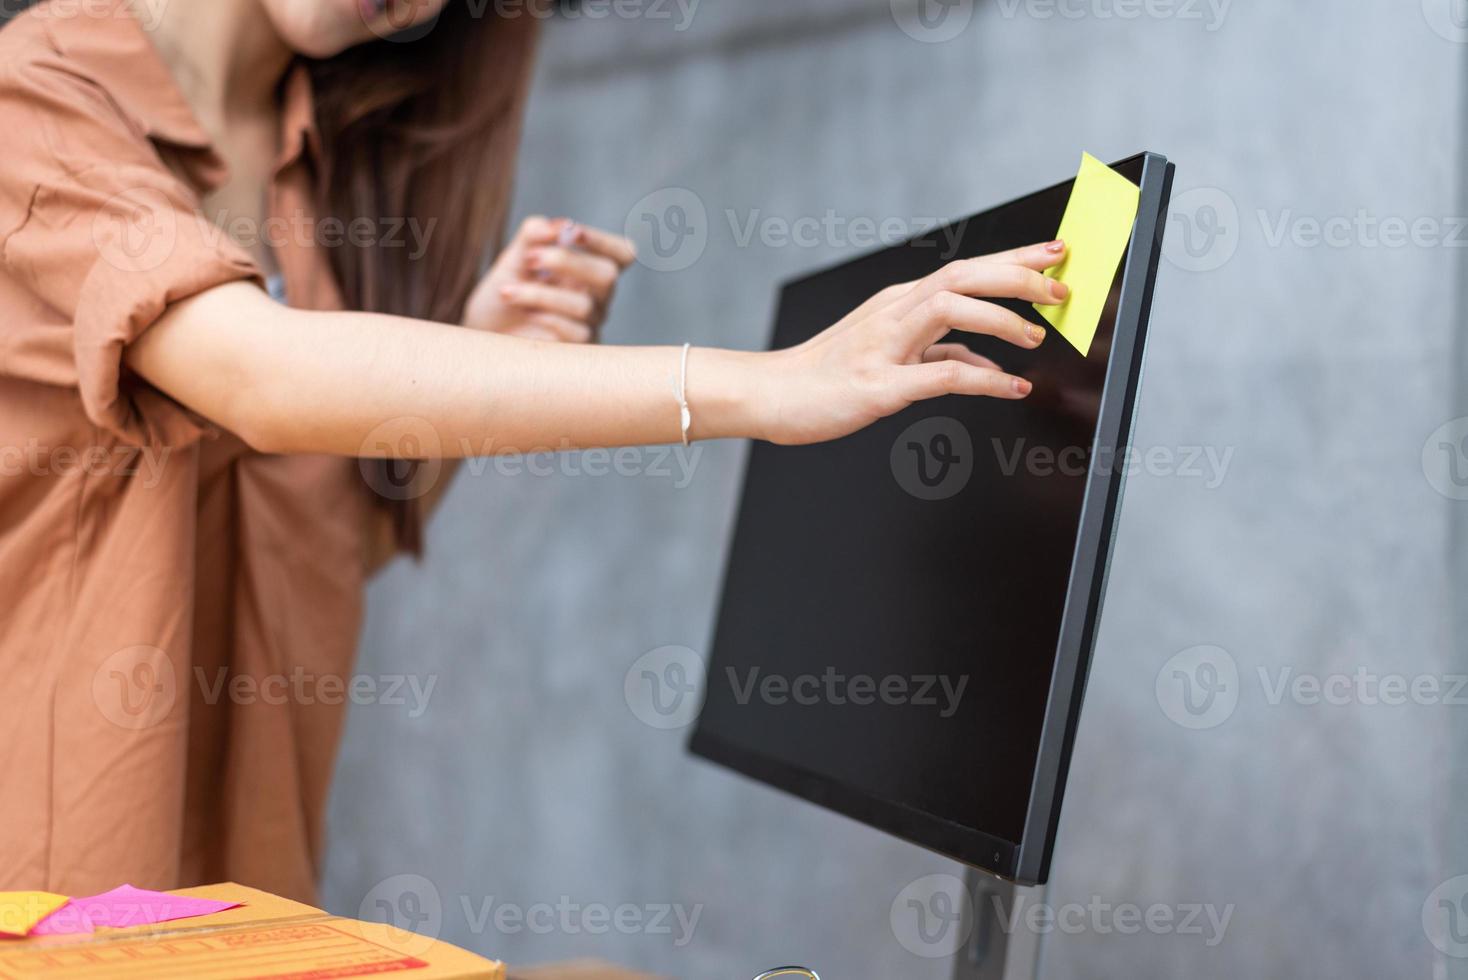 femme d'affaires collant un mémo de liste de commandes sur un écran d'ordinateur pour rappeler d'envoyer des colis aux clients. concept d'entreprise et de service. thème des achats en ligne et des petits entrepreneurs photo